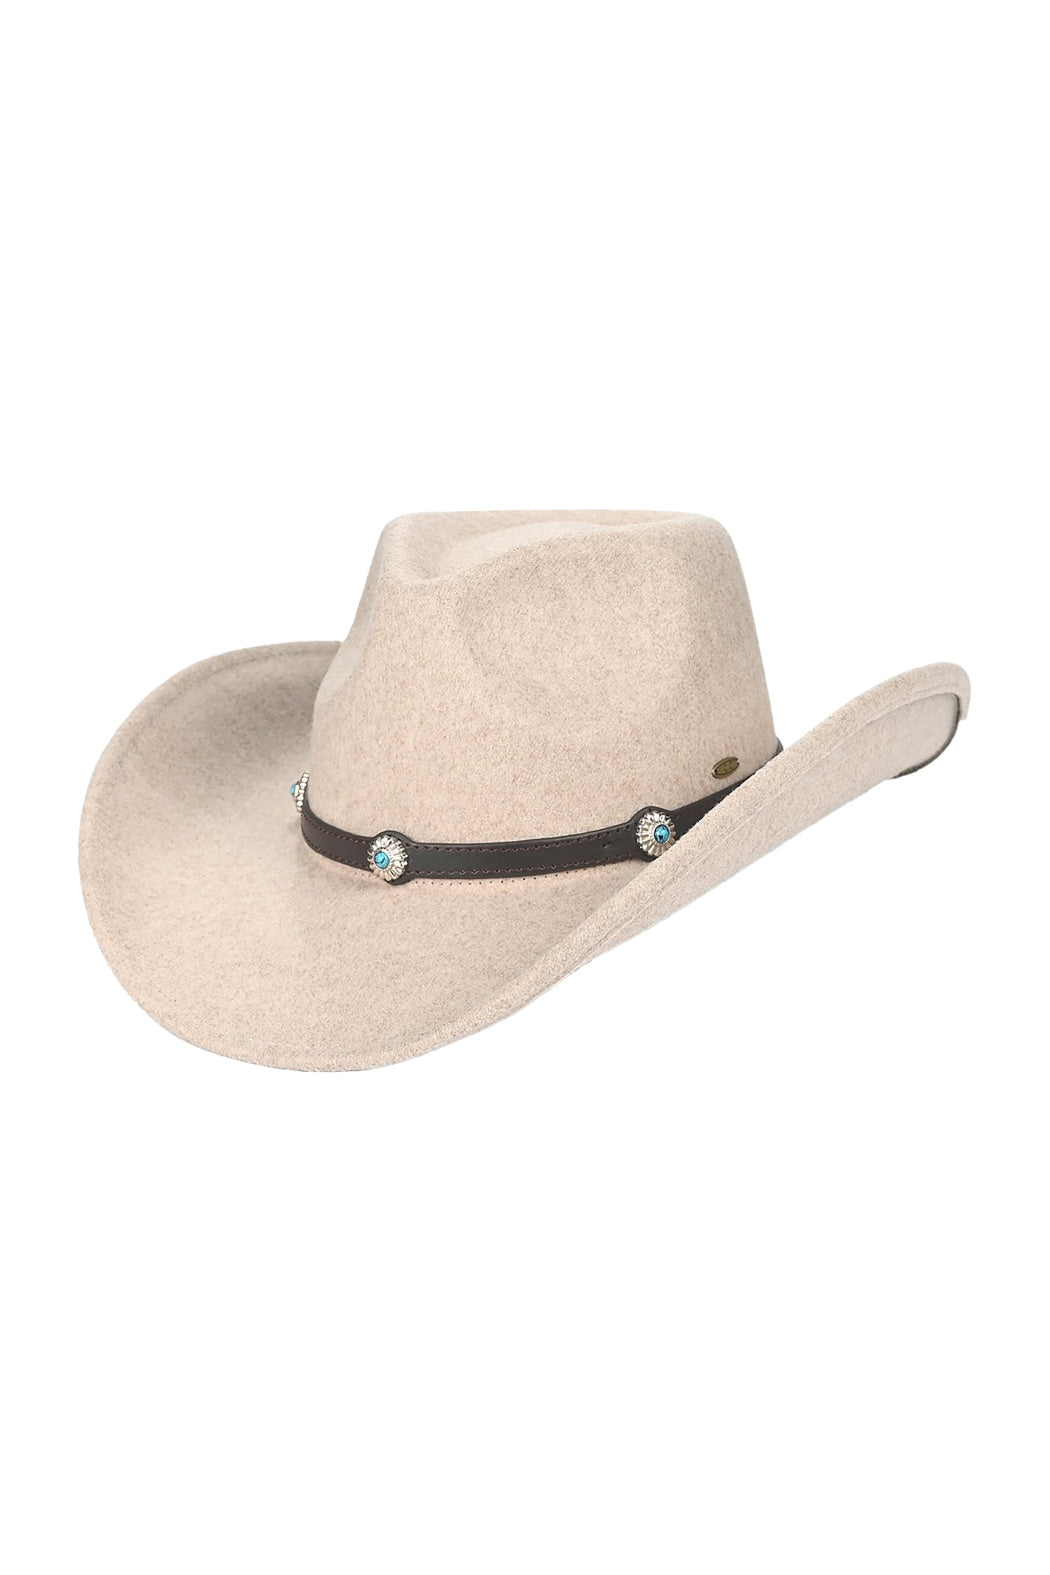 Turquoise Stone Felt  Cowboy Hat